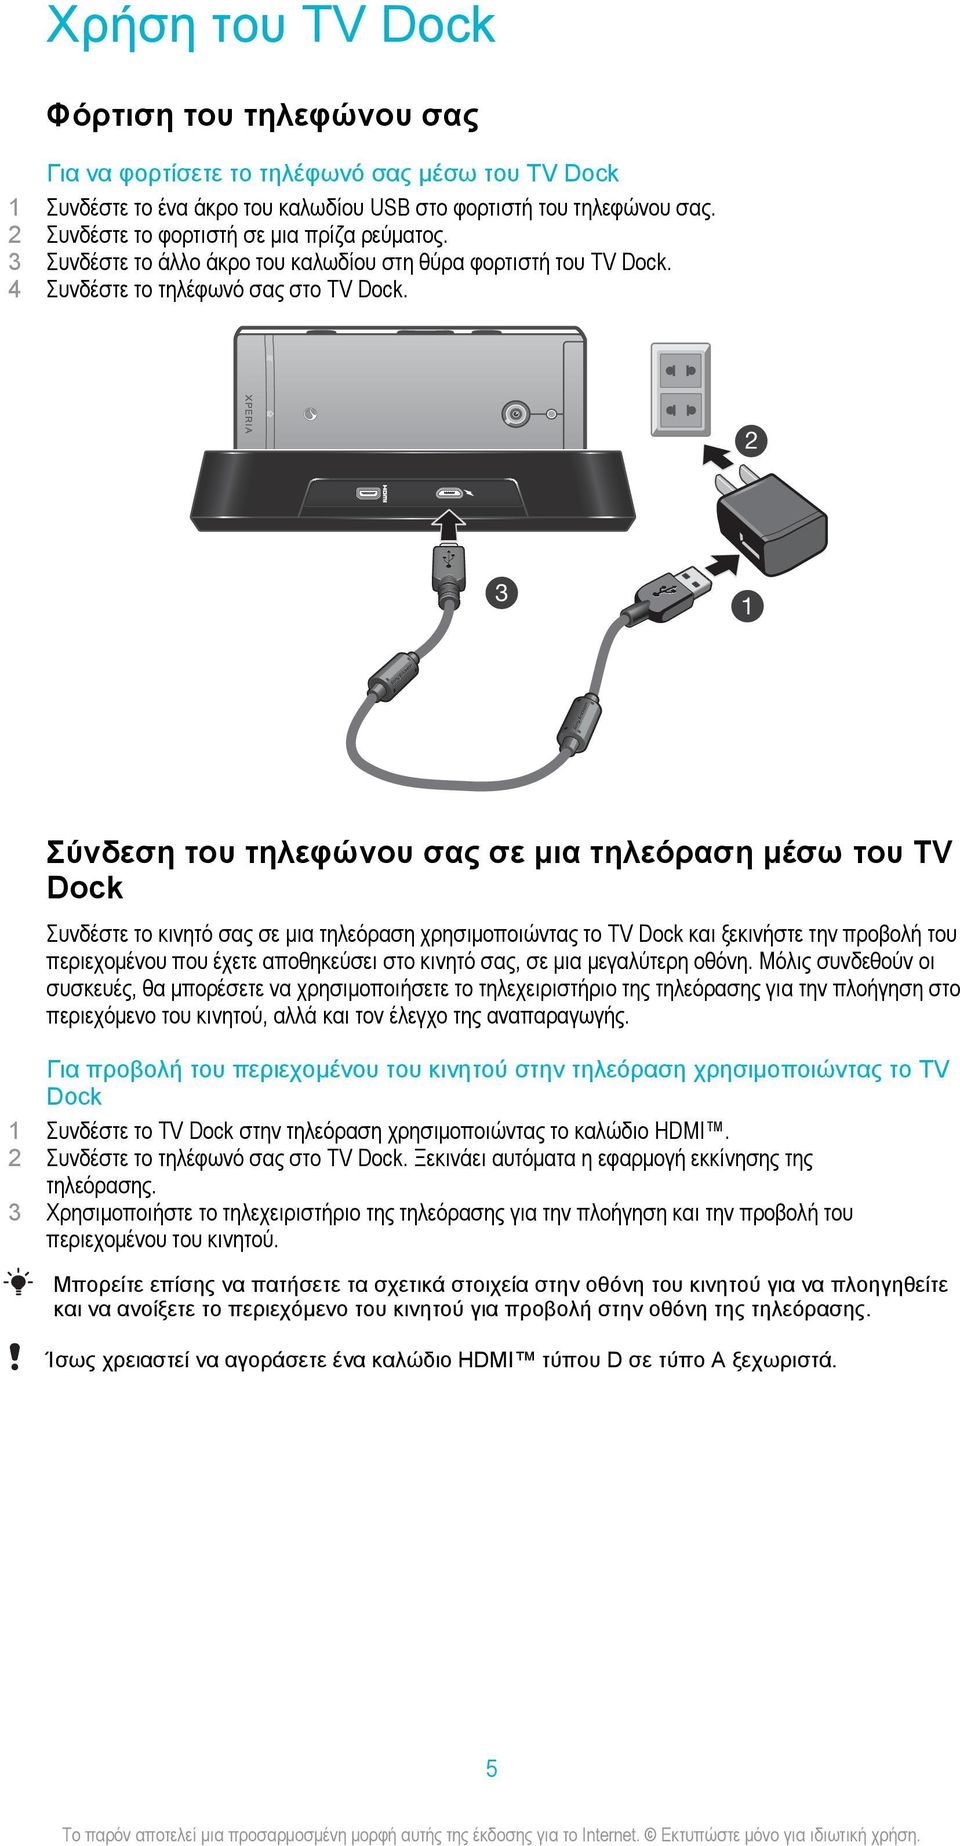 2 3 1 Σύνδεση του τηλεφώνου σας σε μια τηλεόραση μέσω του TV Dock Συνδέστε το κινητό σας σε μια τηλεόραση χρησιμοποιώντας το TV Dock και ξεκινήστε την προβολή του περιεχομένου που έχετε αποθηκεύσει